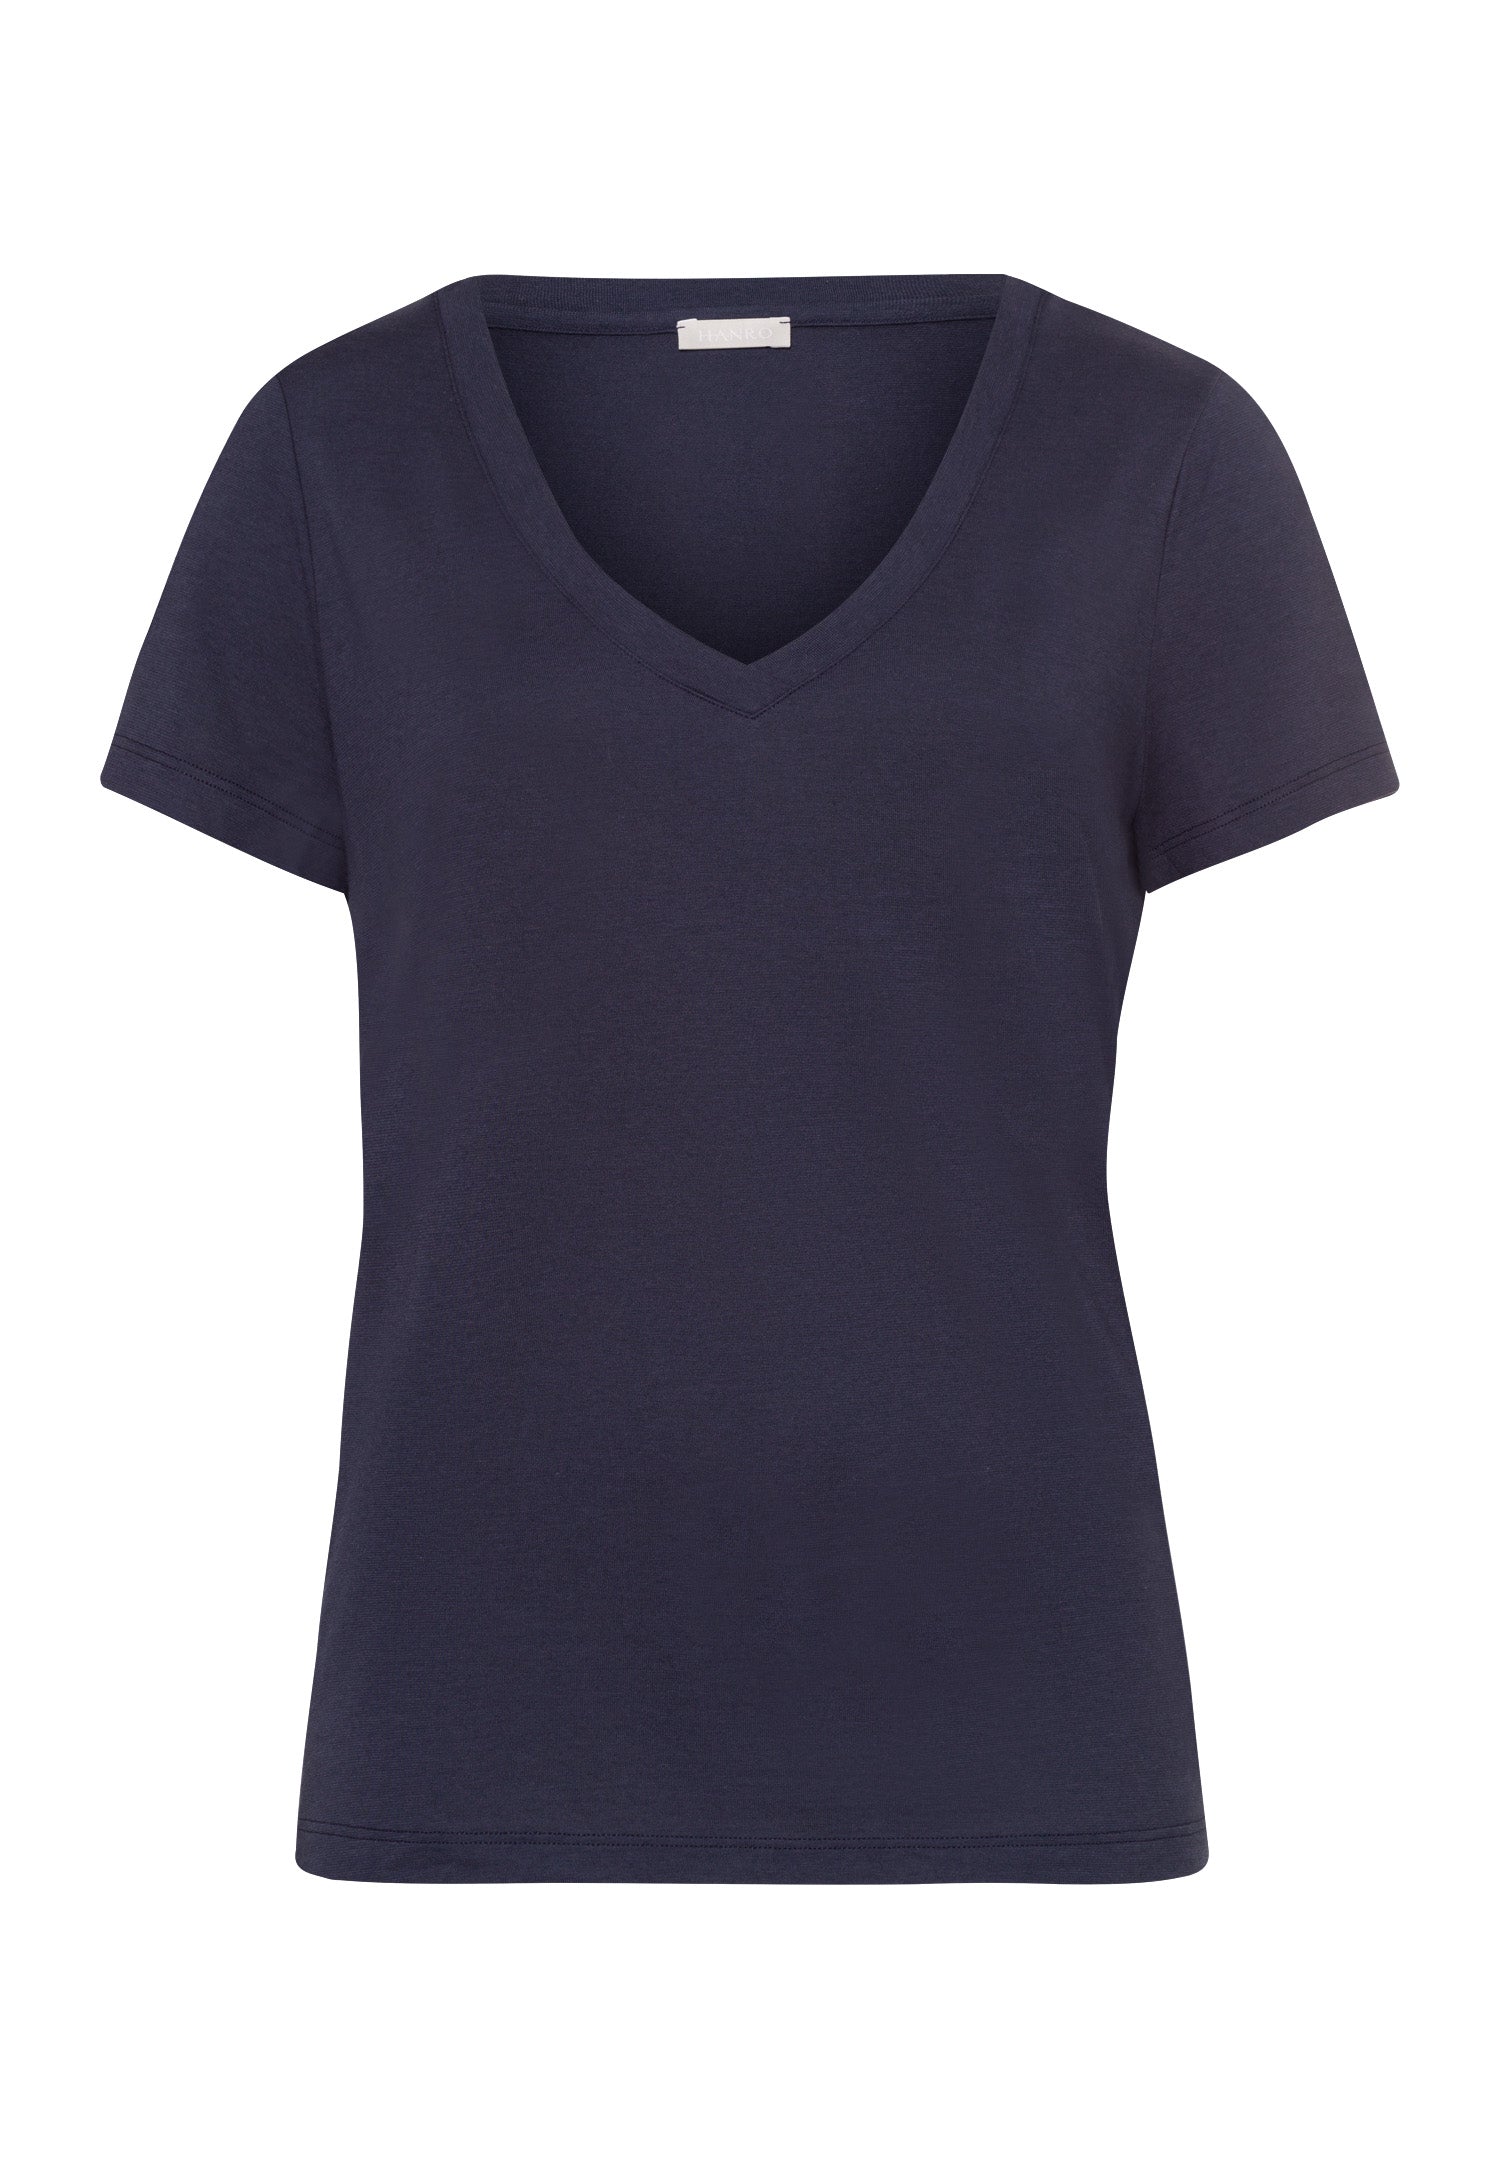 77876 Sleep And Lounge Short Sleeve Shirt - 1650 Blueberry